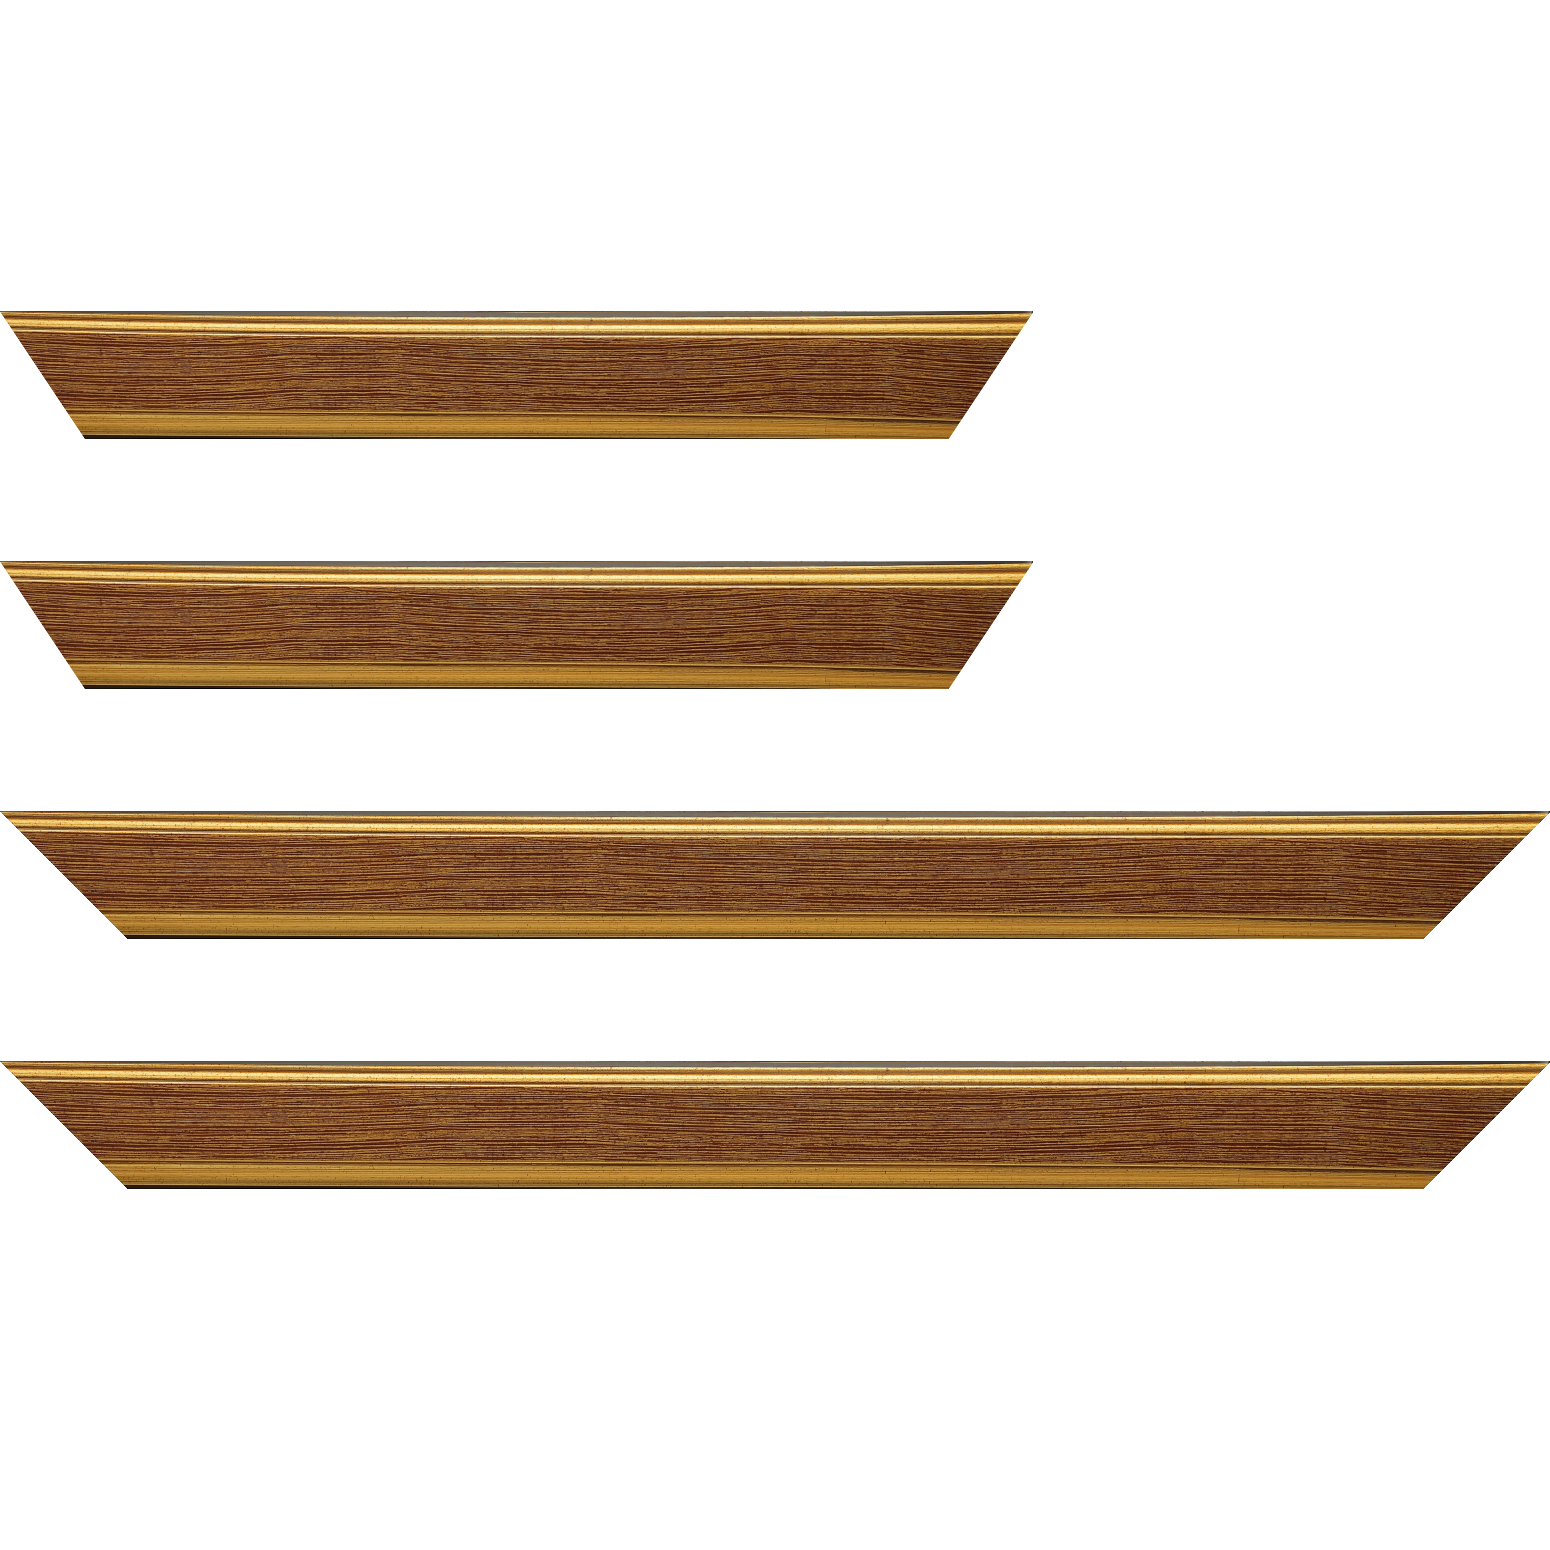 Baguette bois profil plat largeur 3.5cm couleur or fond bordeaux filet or - 28x34